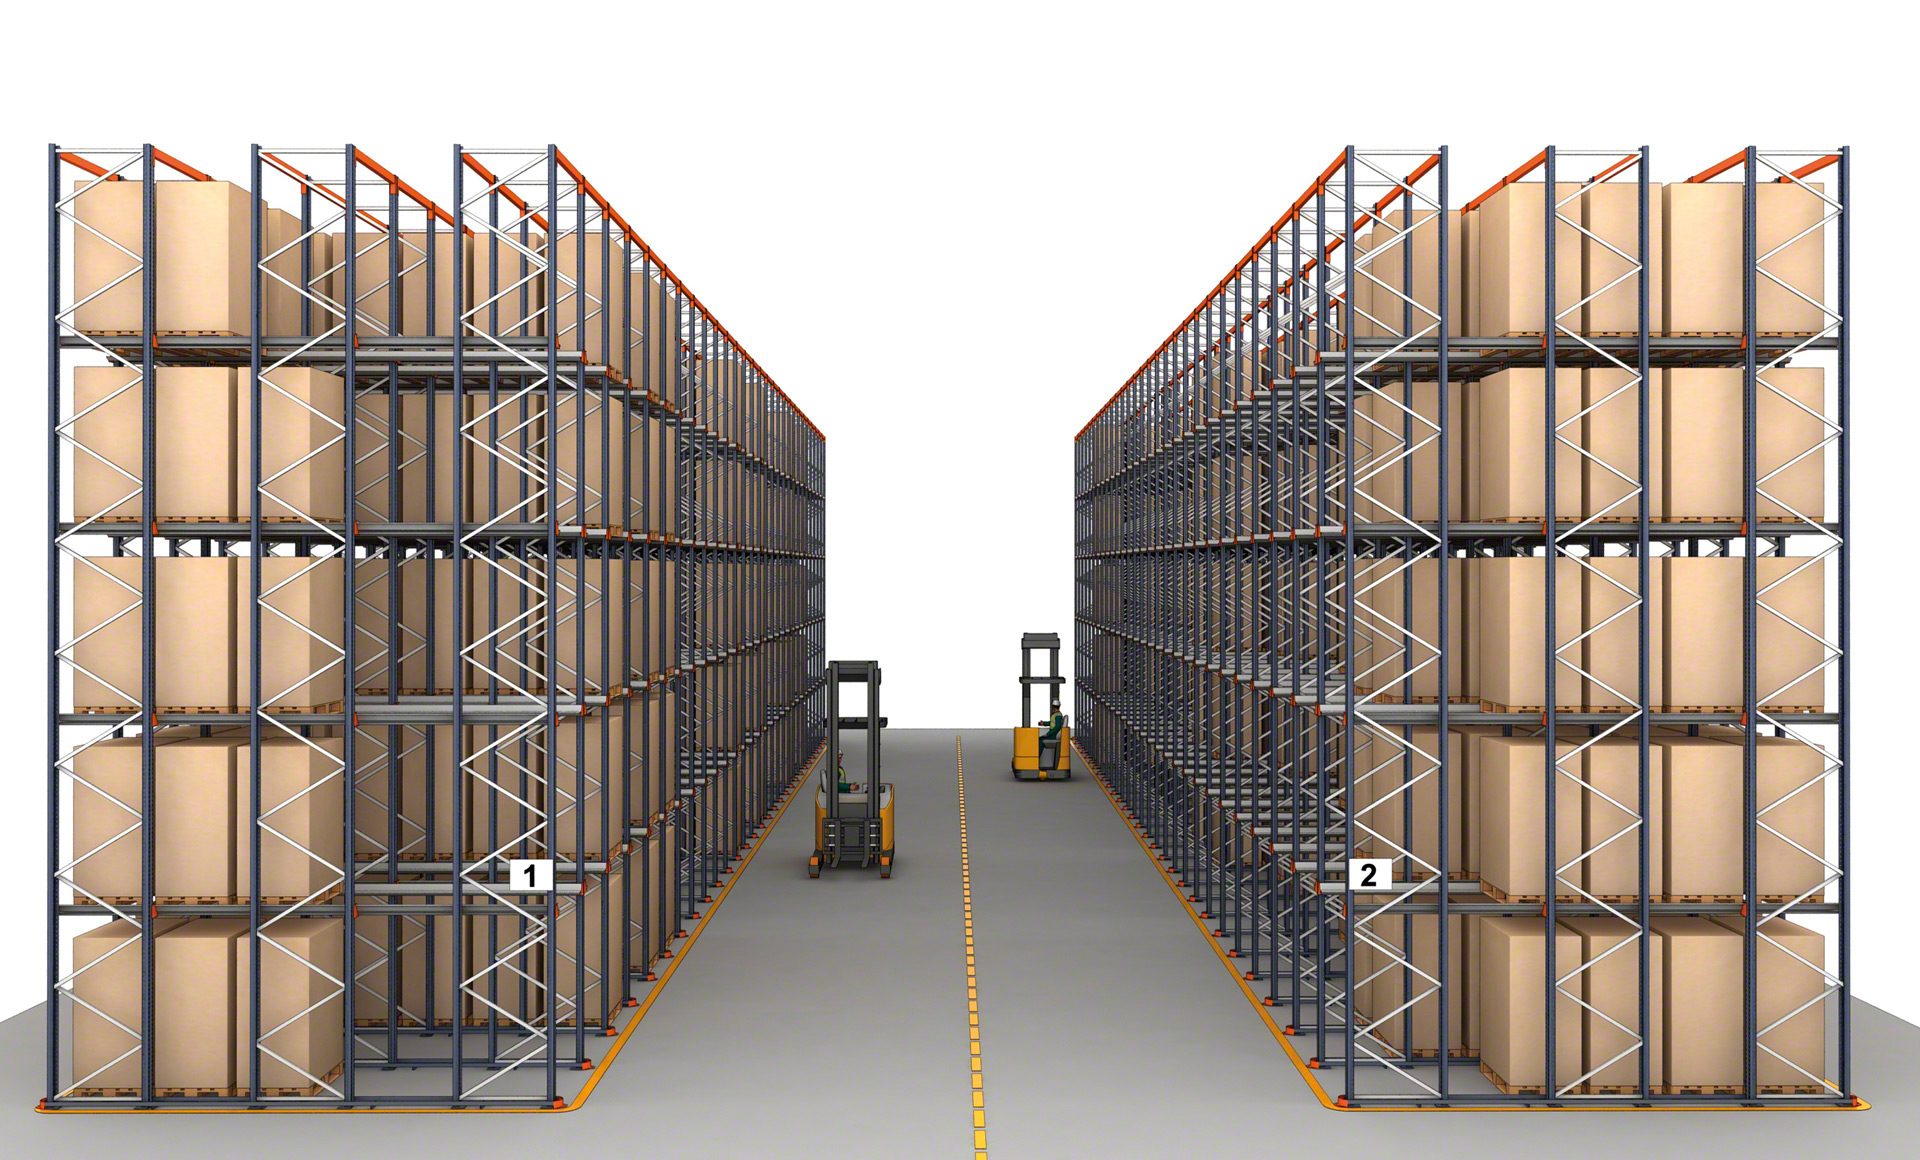 Os sistemas de armazenamento compacto aumentam de forma considerável a capacidade do armazém